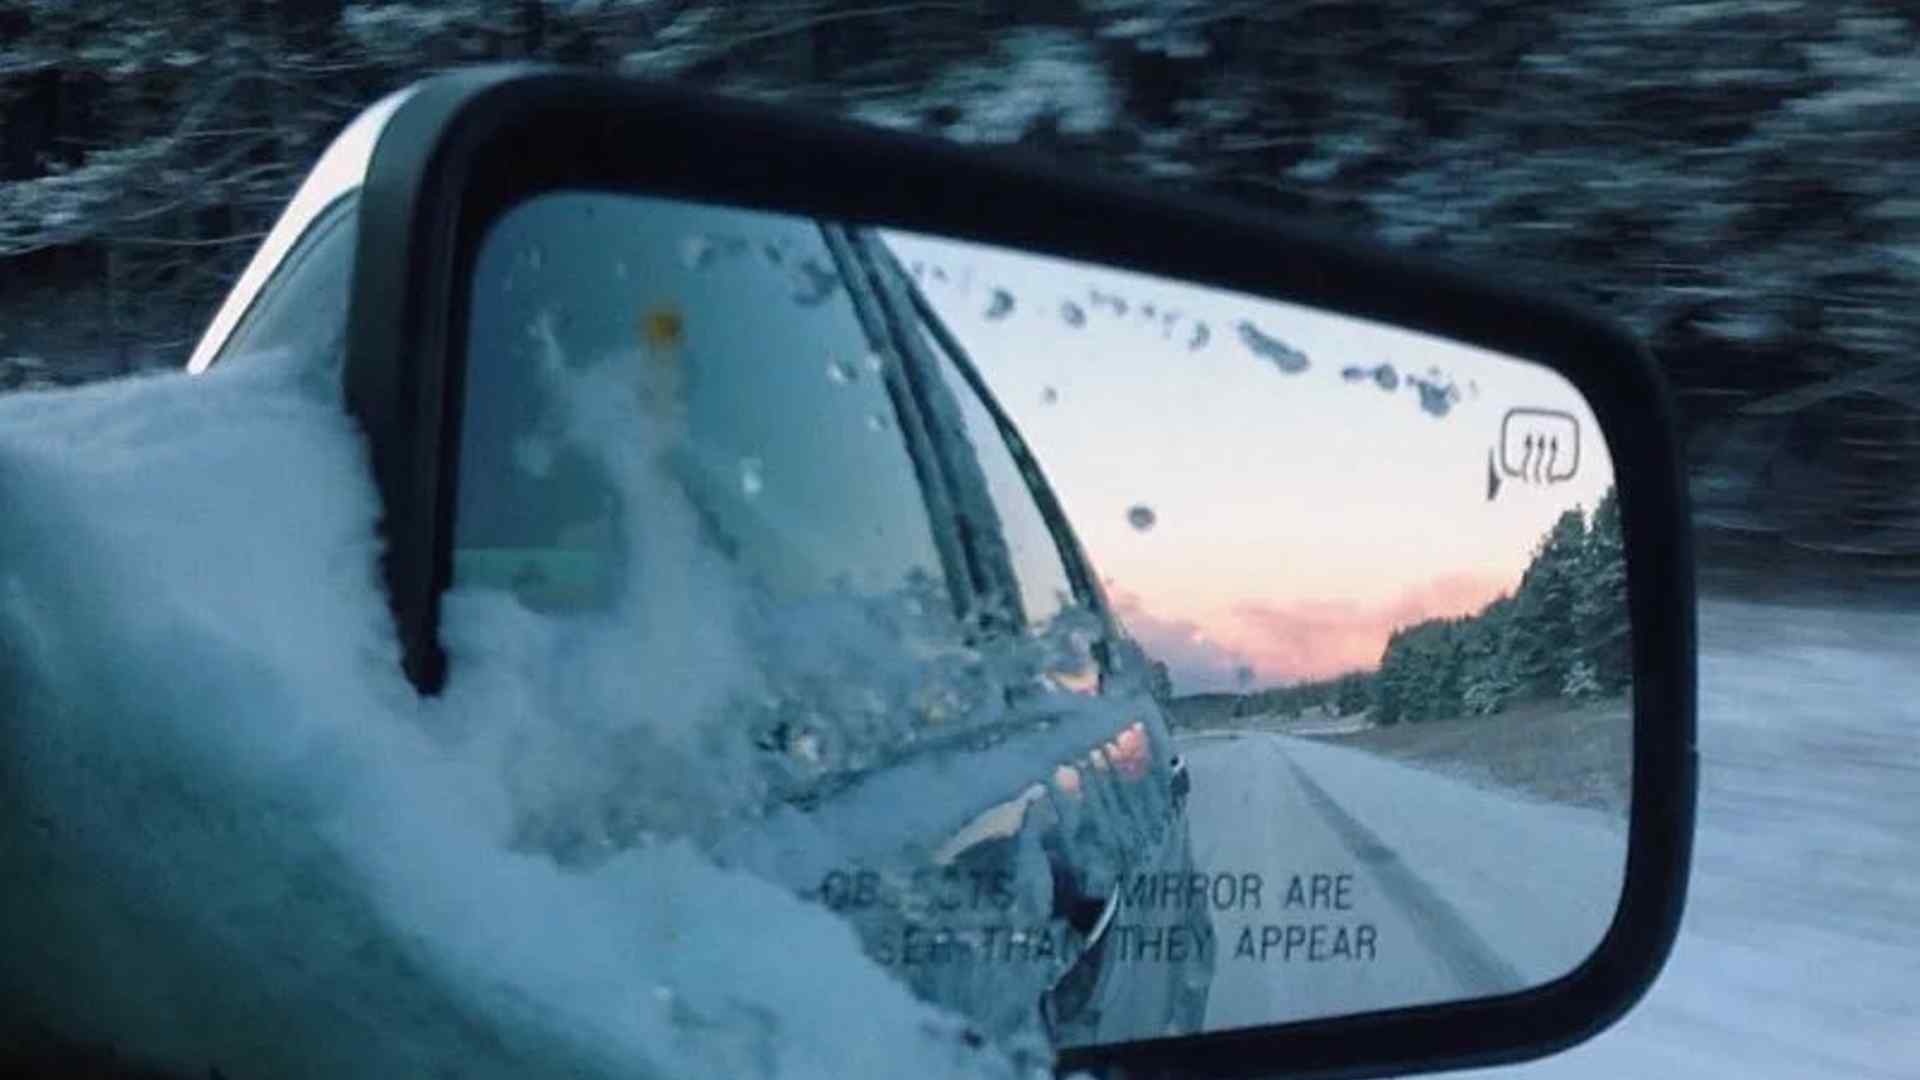 A snowy side mirror on a car